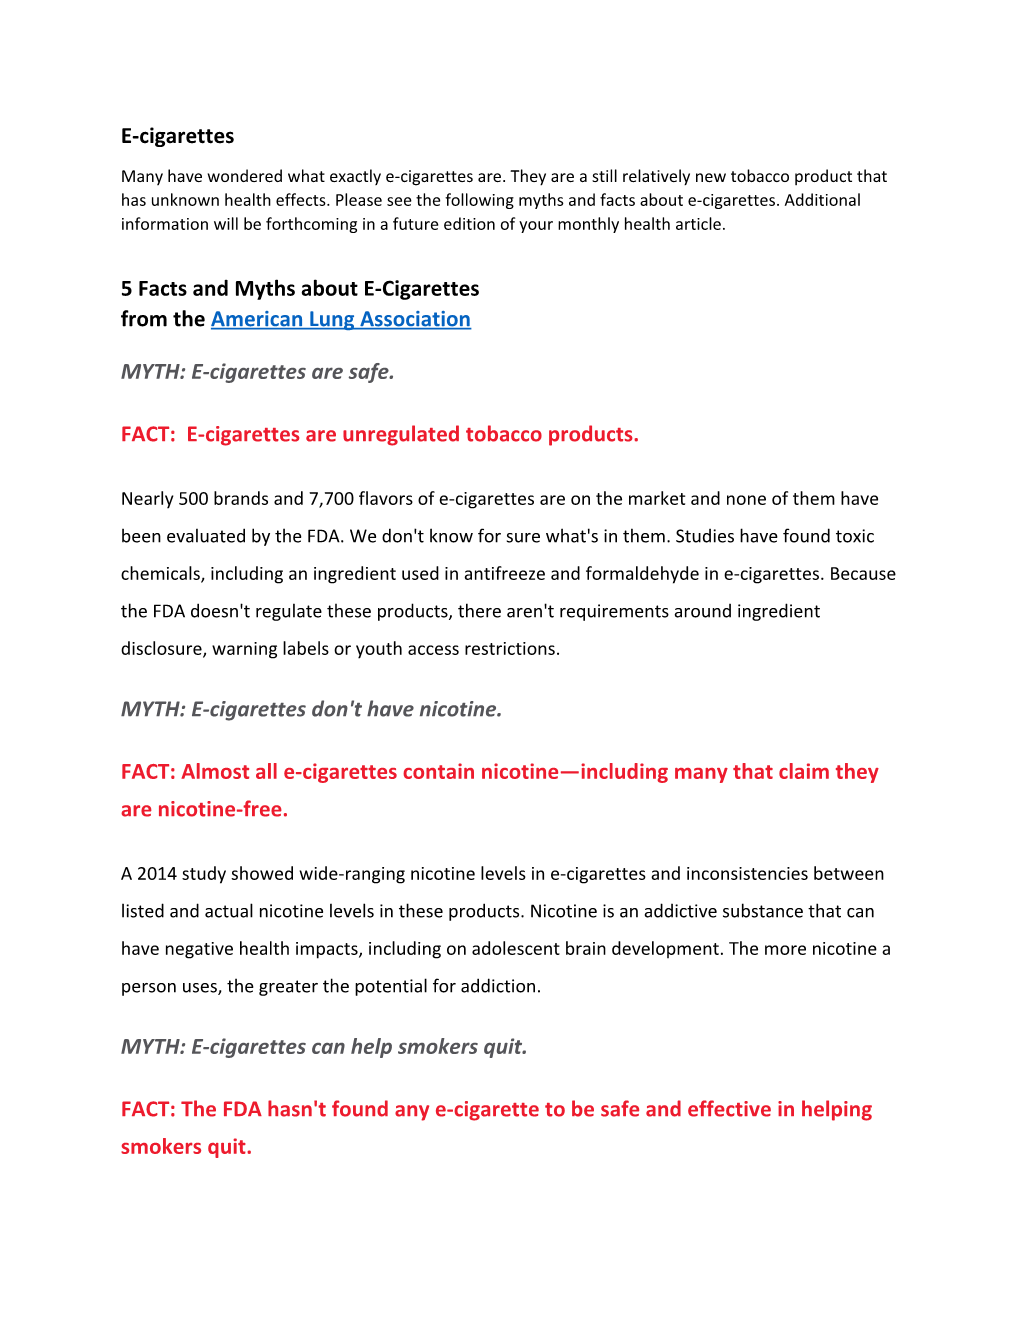 MYTH: E-Cigarettes Are Safe